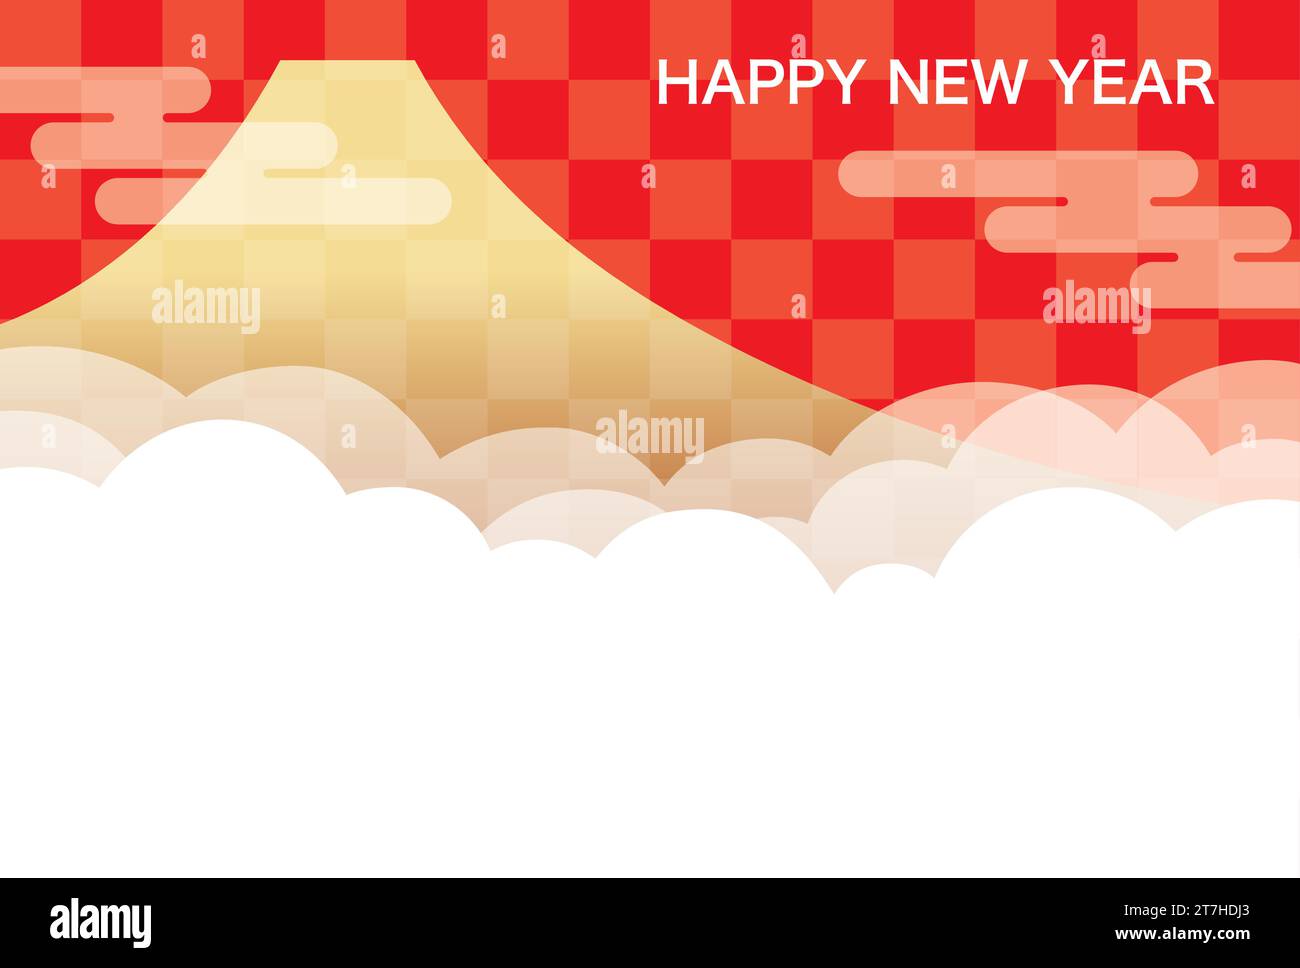 Vektor Neujahrsgrußkarte Vorlage mit Mt. Fuji, Wolken Und Textraum. Stock Vektor